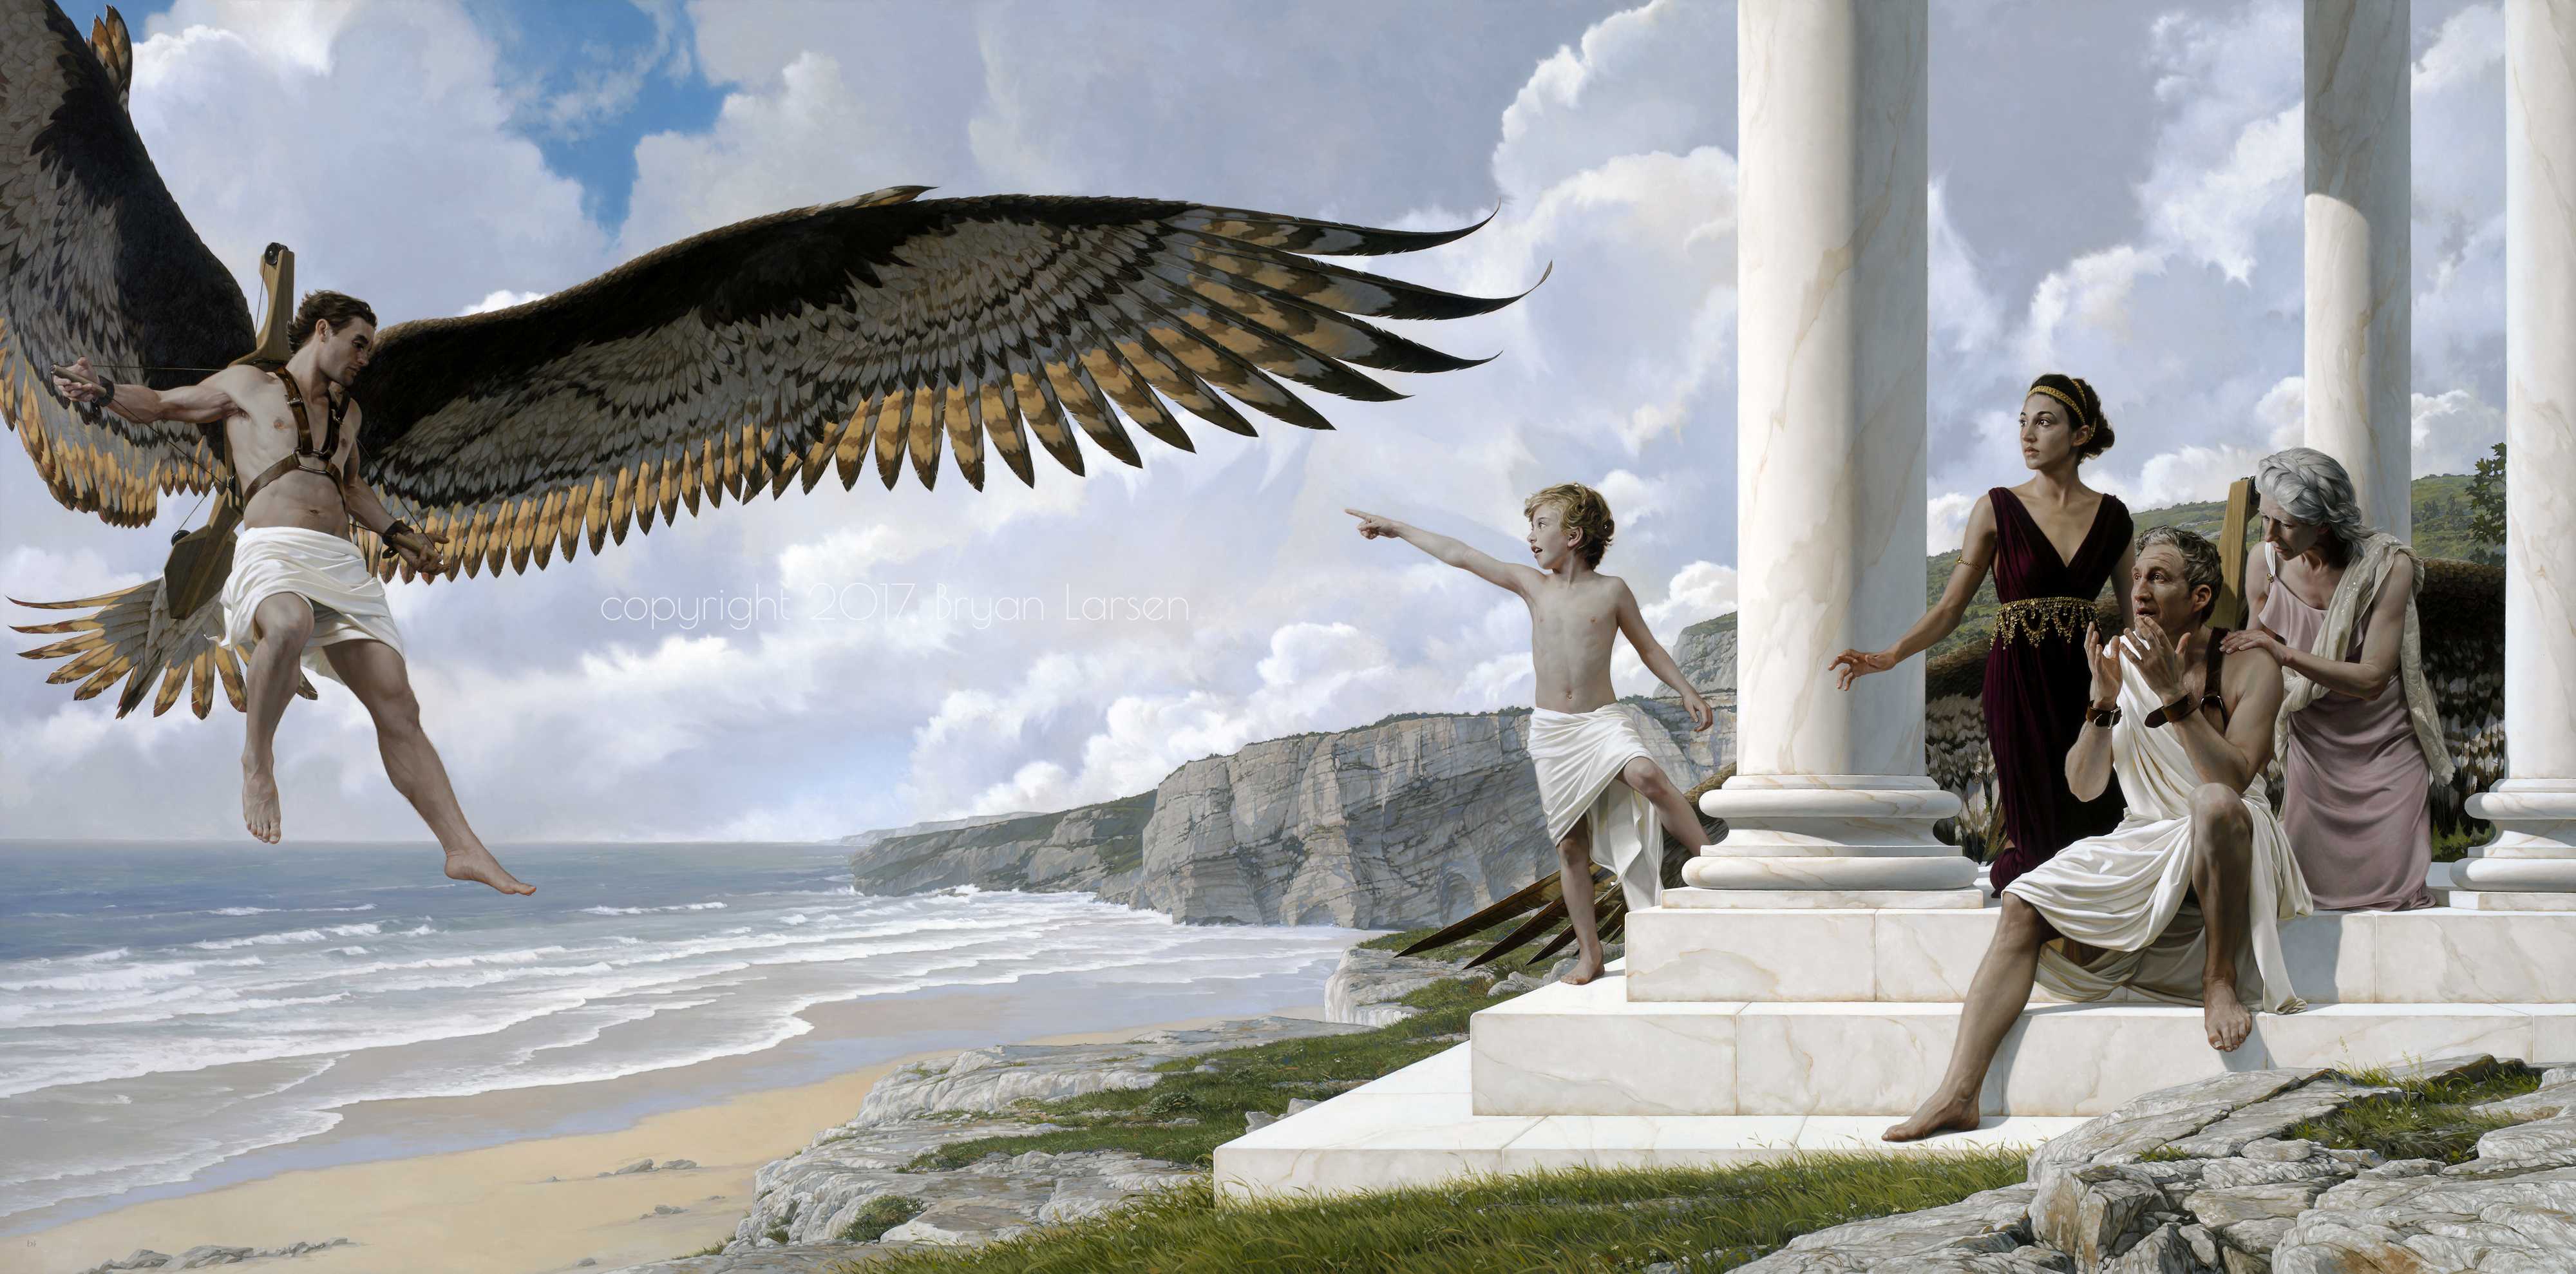 Дедал - великий художник и скульптор, придумавший крылья